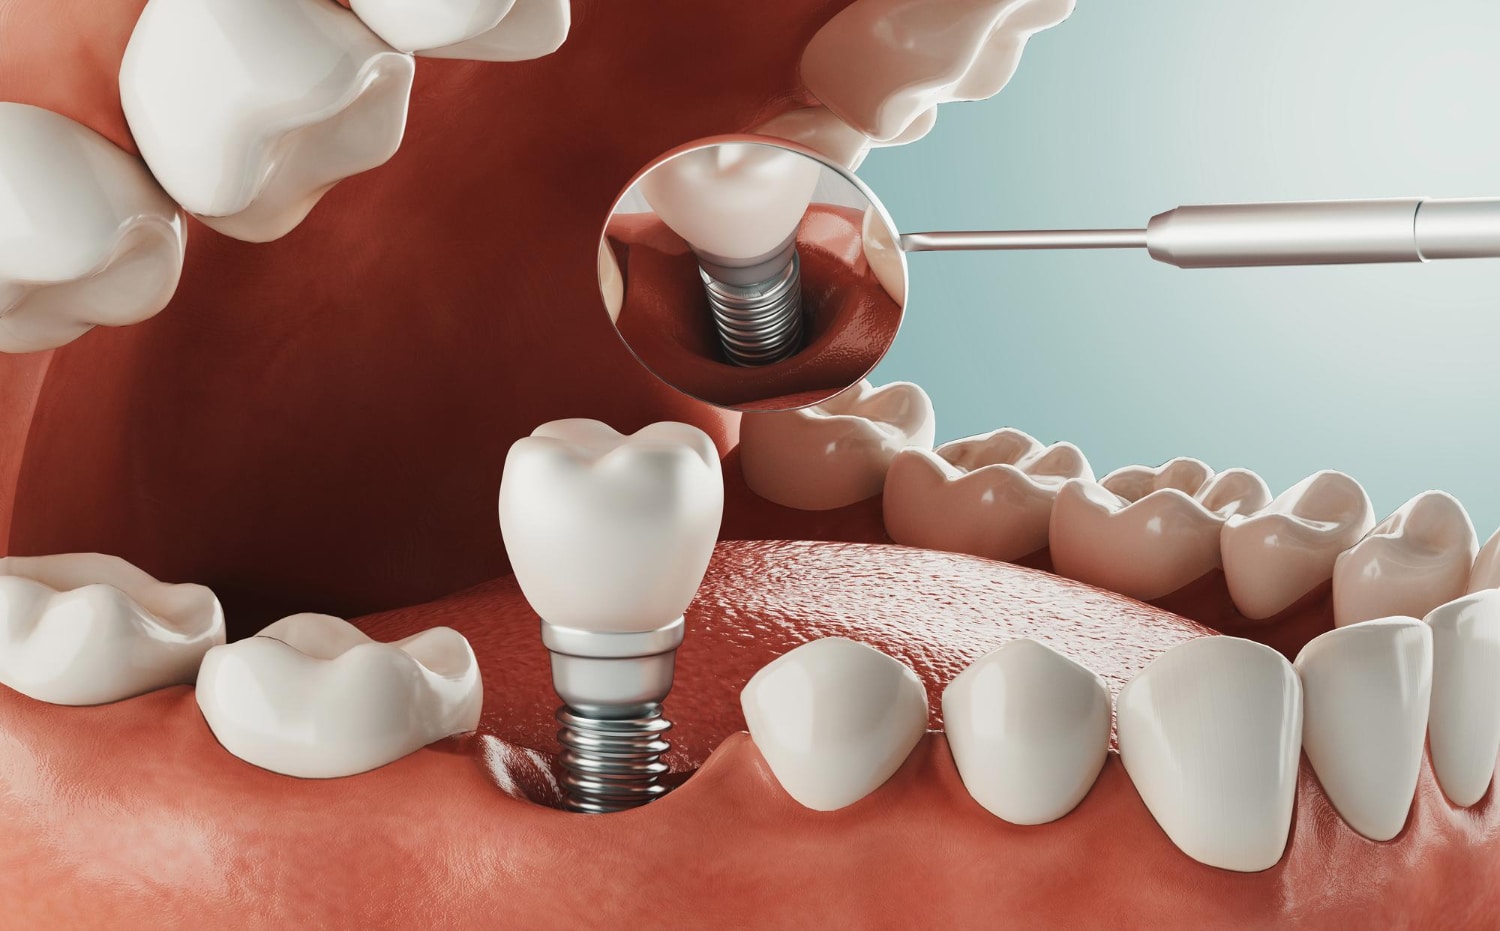 Implantes dentales: ¿quiénes son candidatos ideales y qué factores influyen en su elegibilidad?